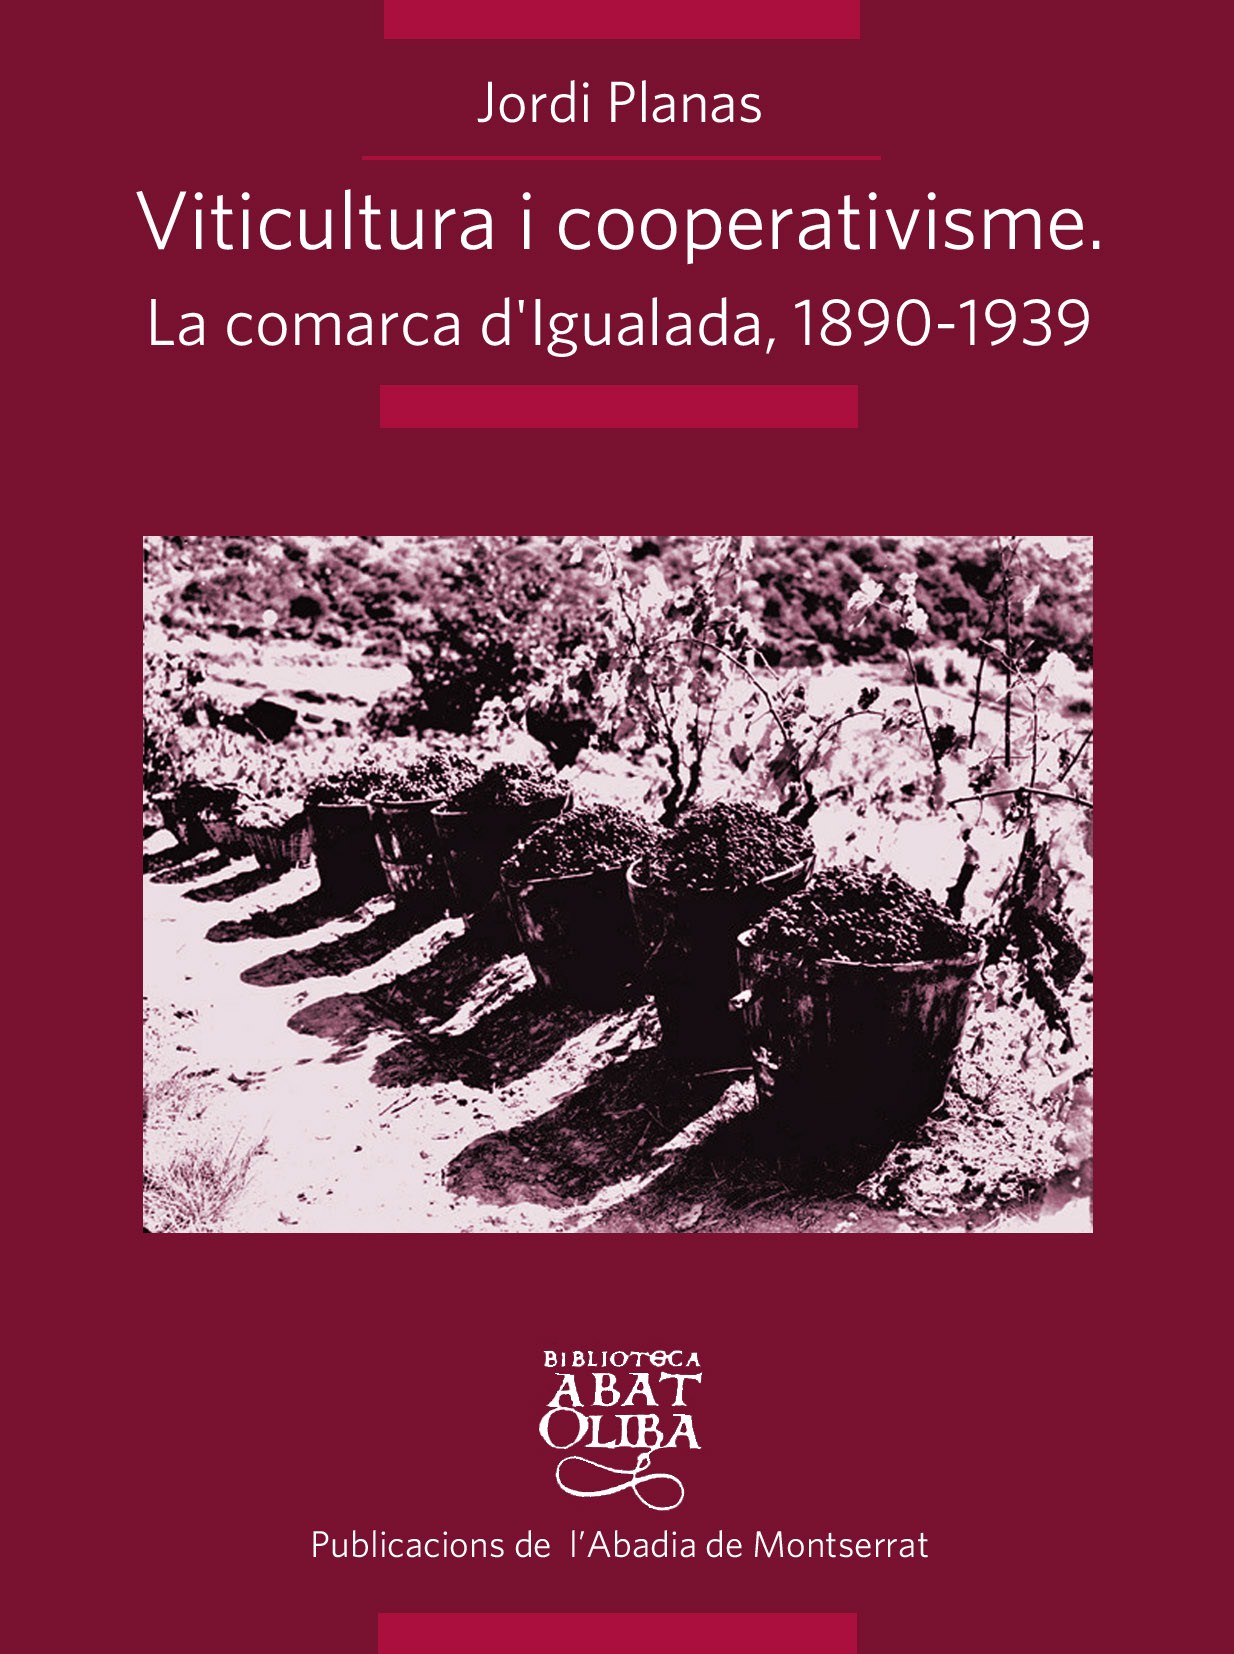 VITICULTURA I COOPERATIVISME: LA COMARCA D'IGUALADA 1890-1939